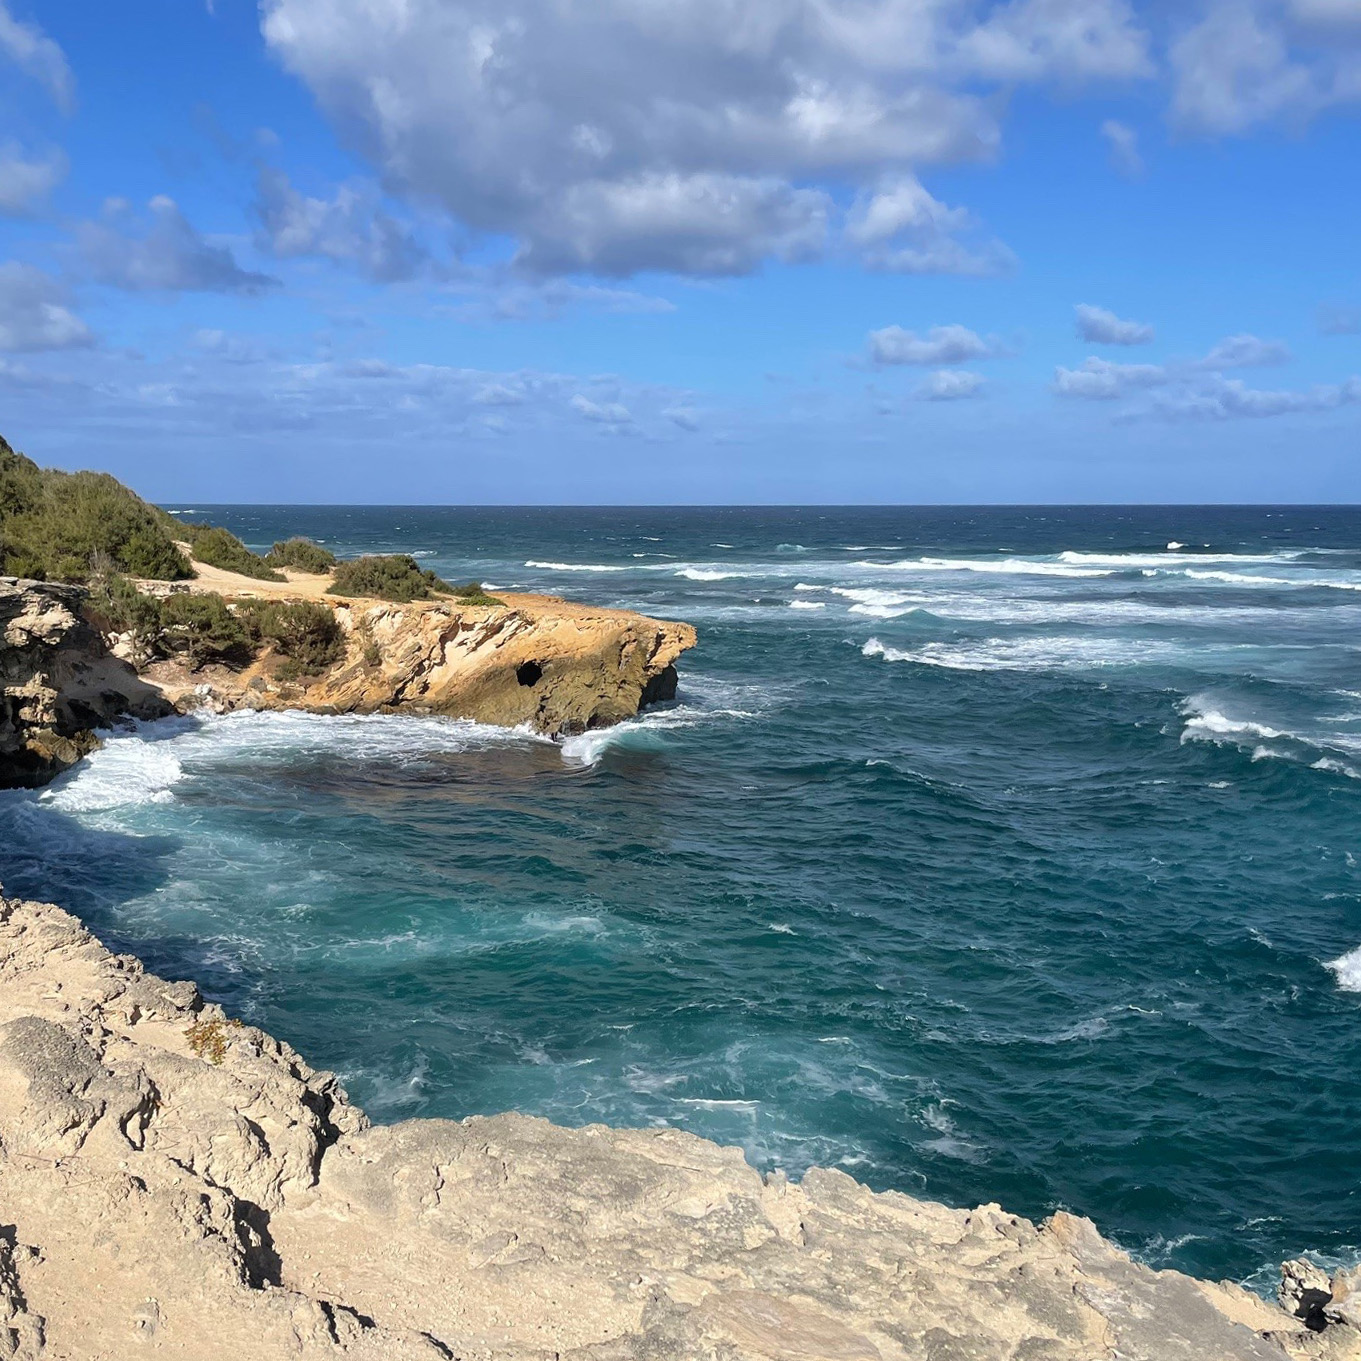 image of cliff overlooking the ocean